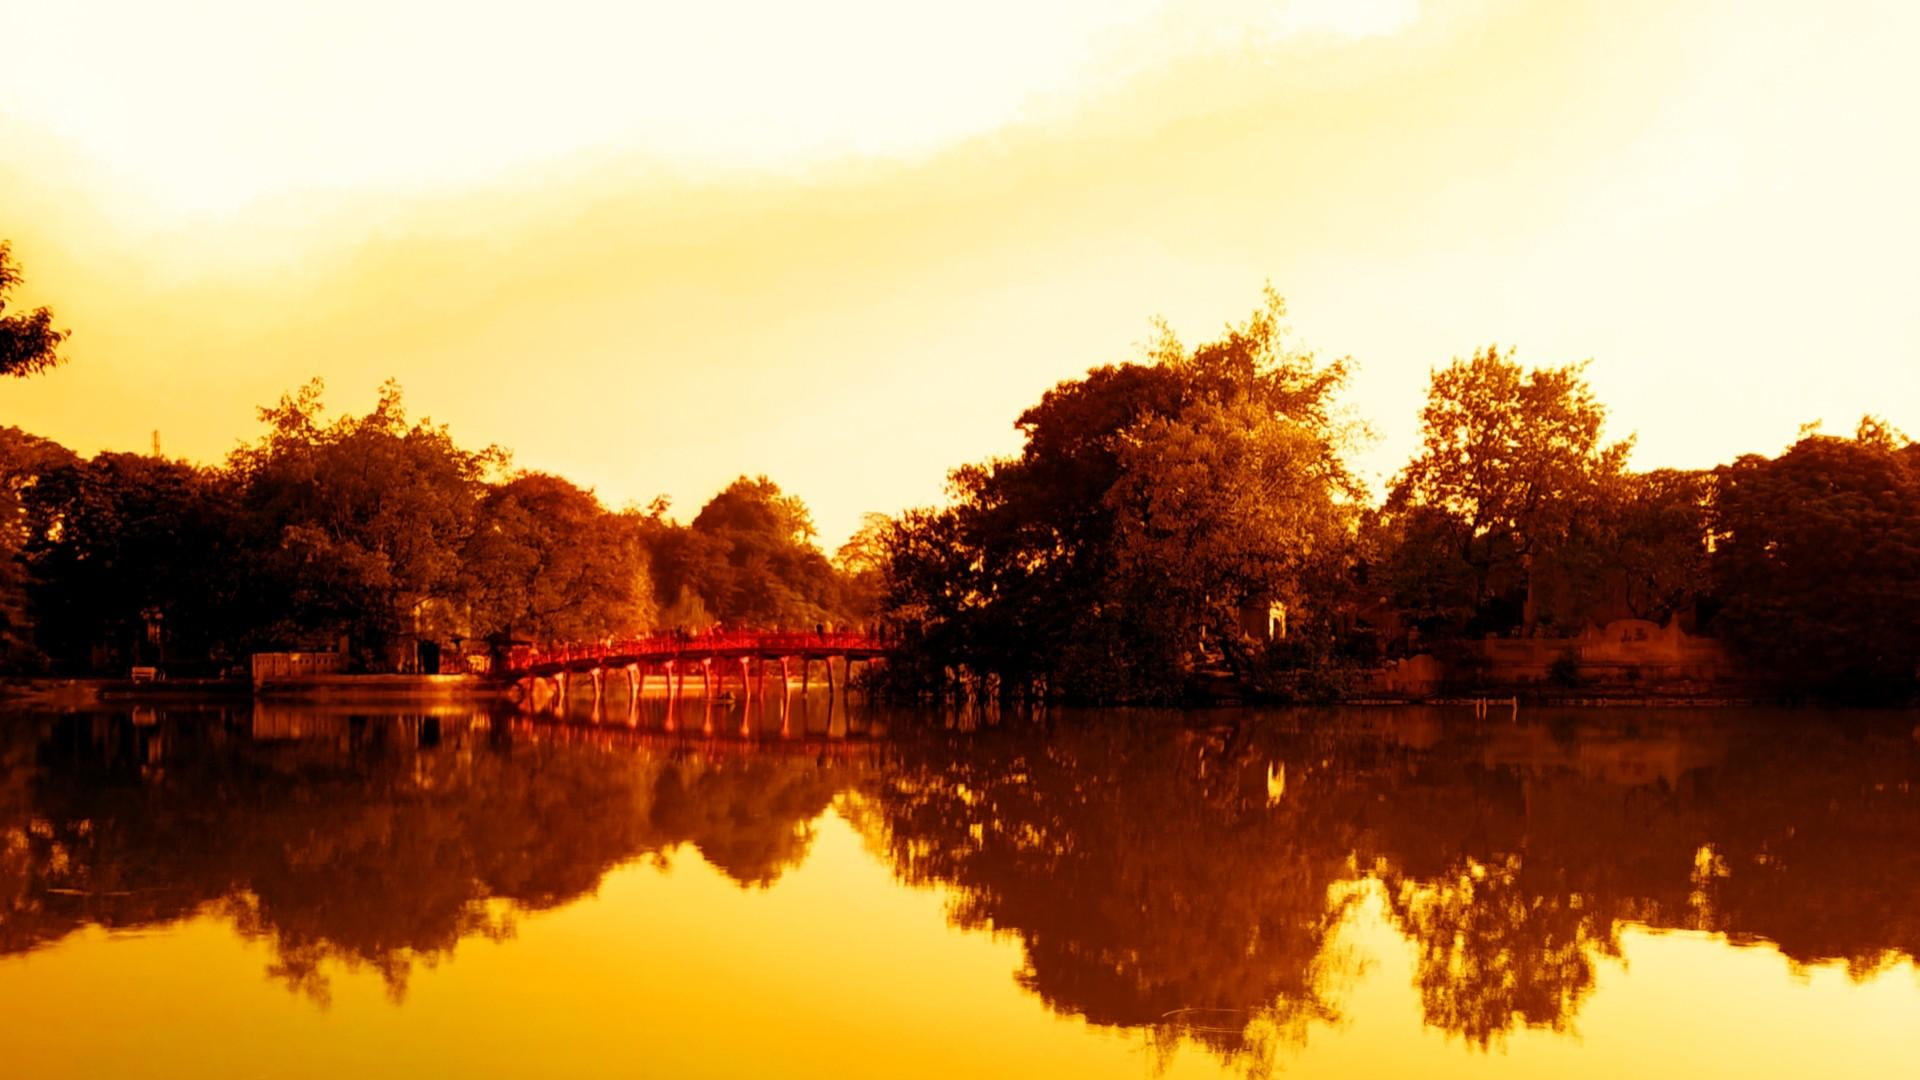 hanoi, hoguom, vietnam, lake, sunset, reflection, tree, water